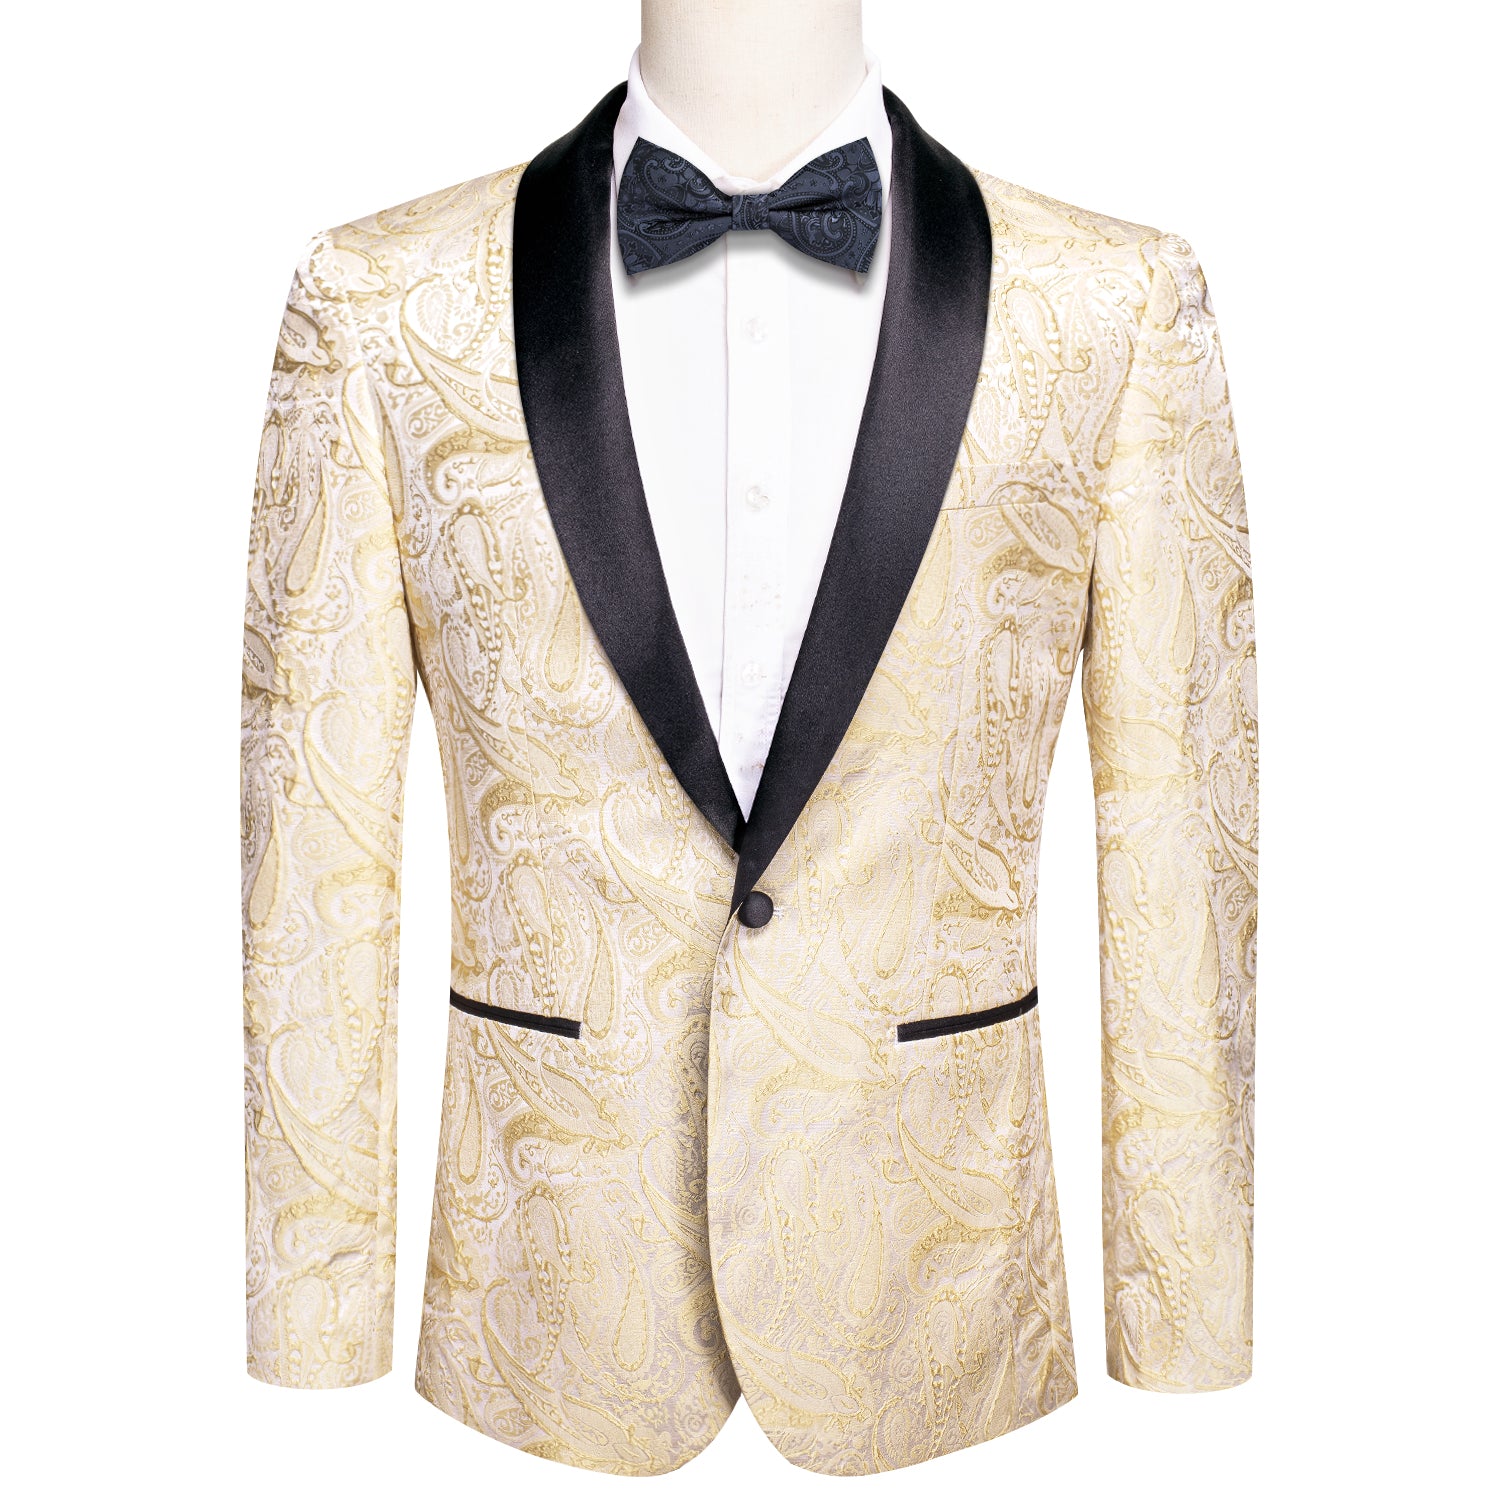  Wedding Blazer Champagne Floral Jacquard Men's Suit Set